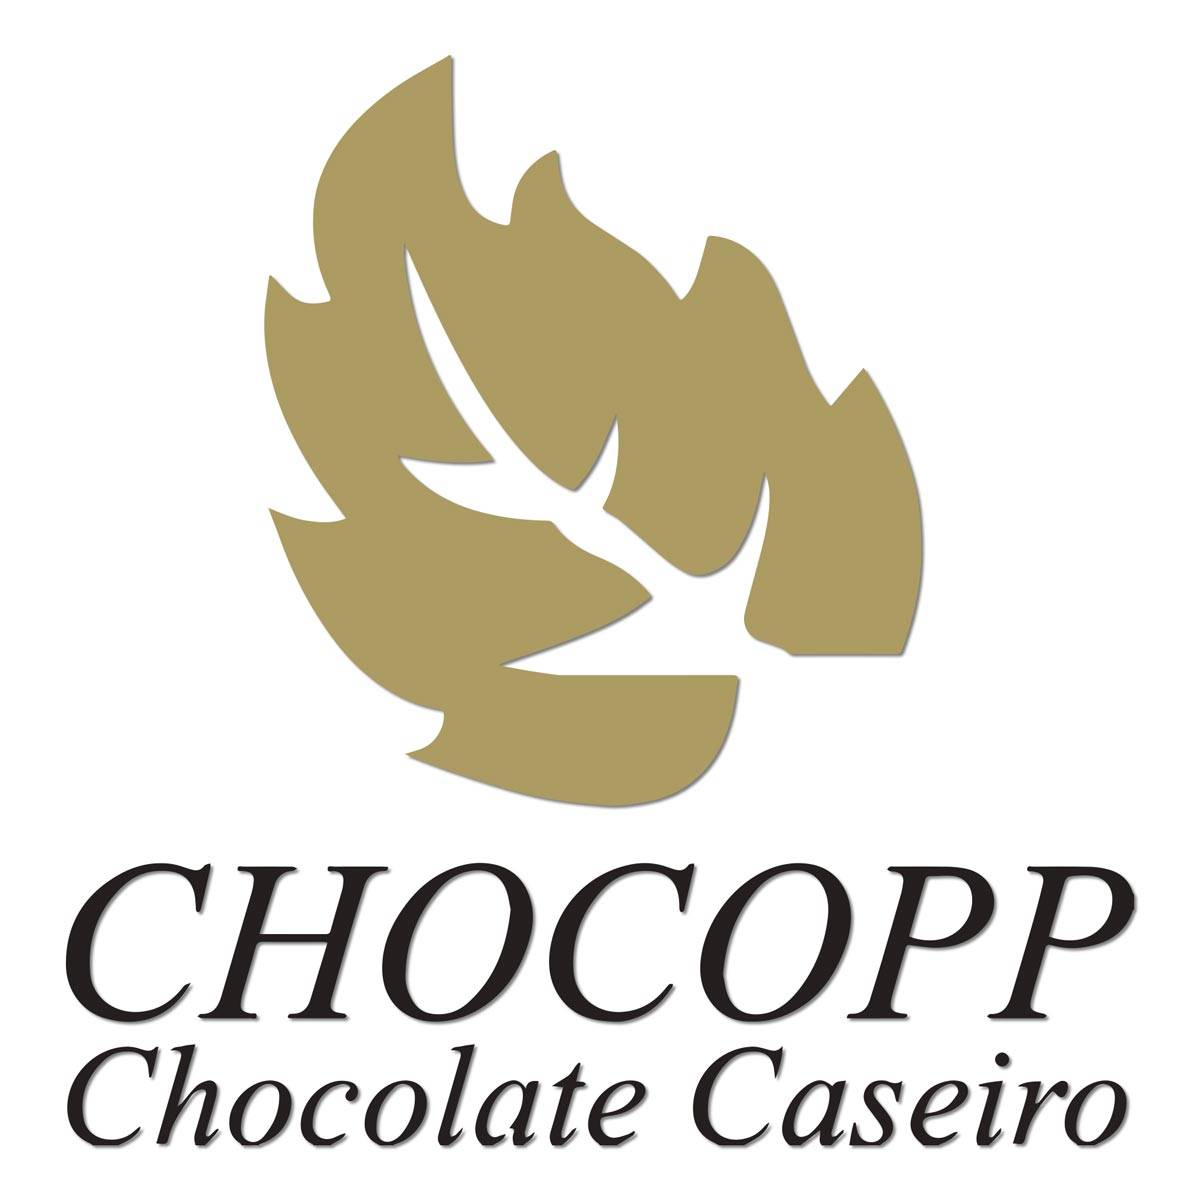 Chocopp Chocolate Caseiro